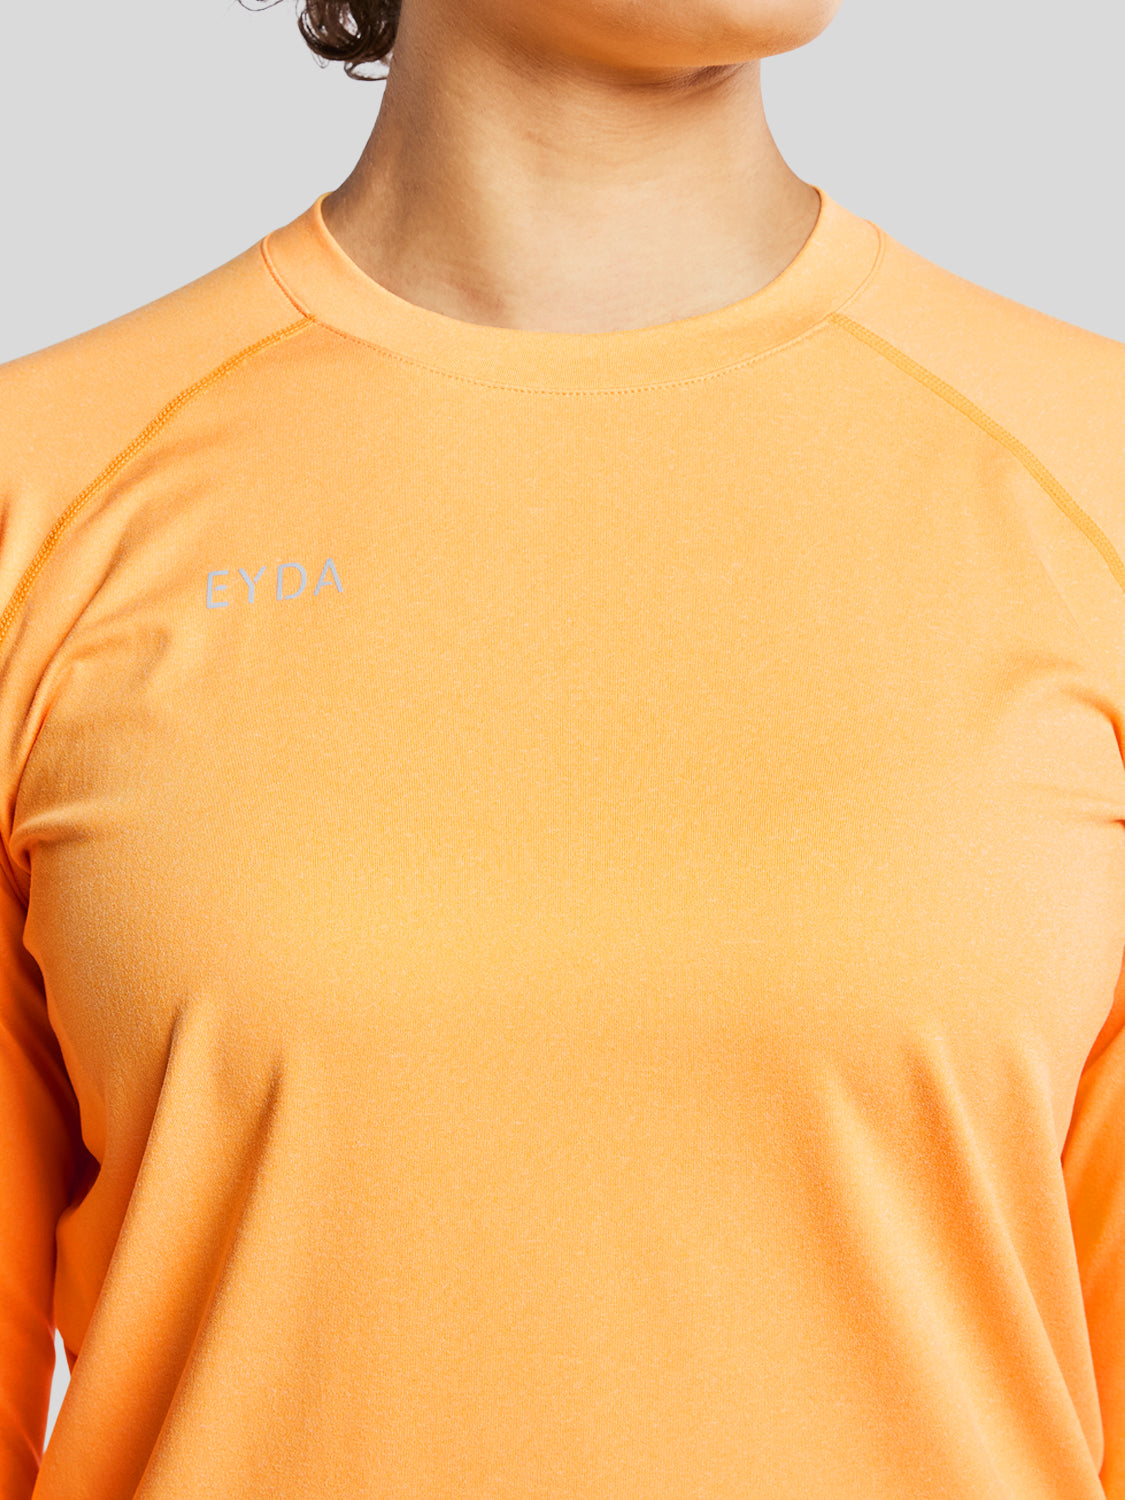 træningstrøje i farven apricot med EYDA logo foran